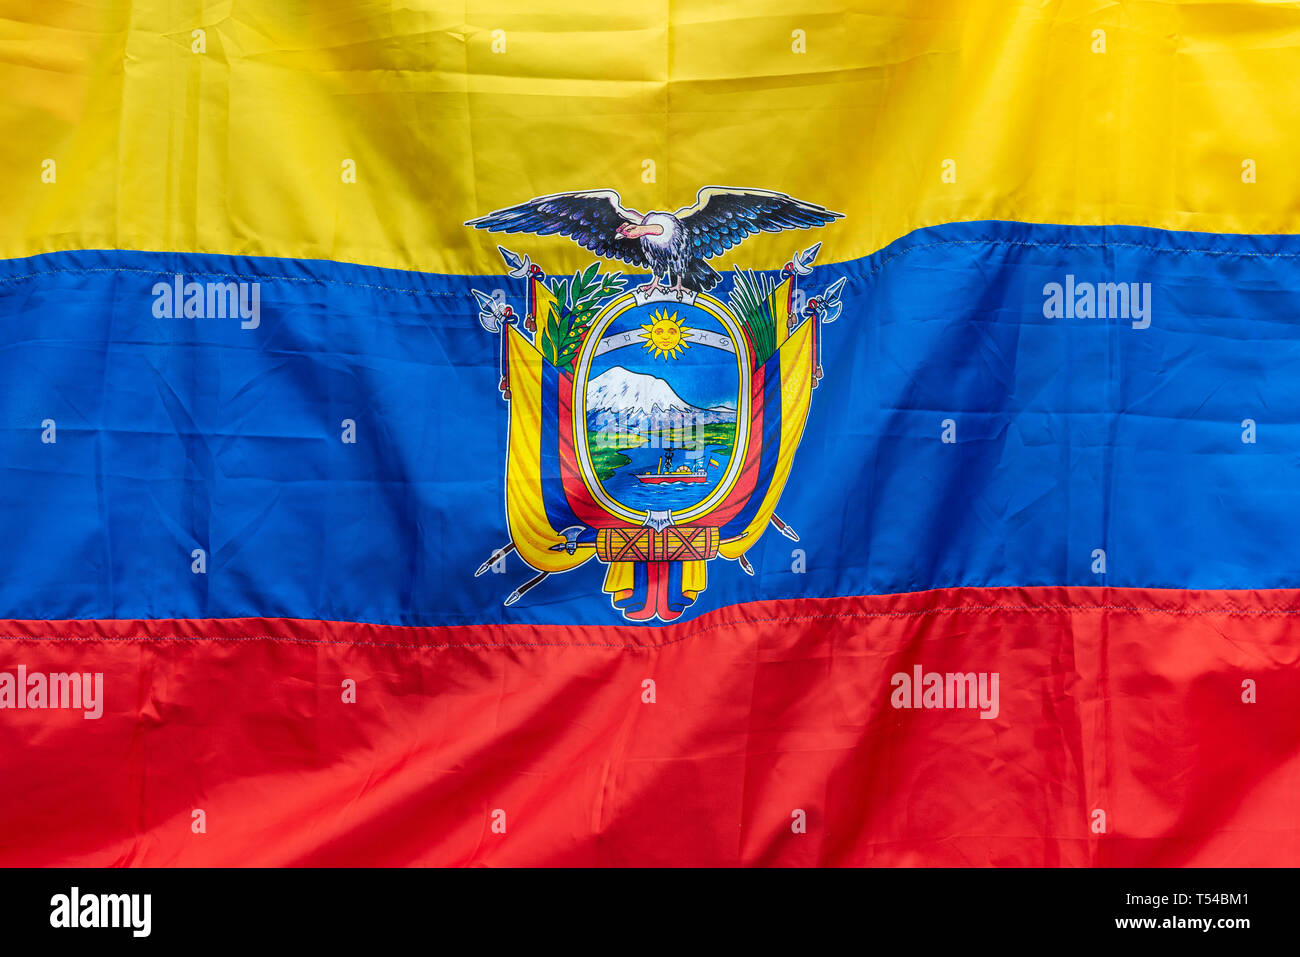 Die Fahne von Ecuador, Zeichen und Konzept der Ecuadorianischen Patriotismus. Die Flagge zeigt die Anden Condor, der Vulkan Chimborazo und Fluss Guayas. Stockfoto